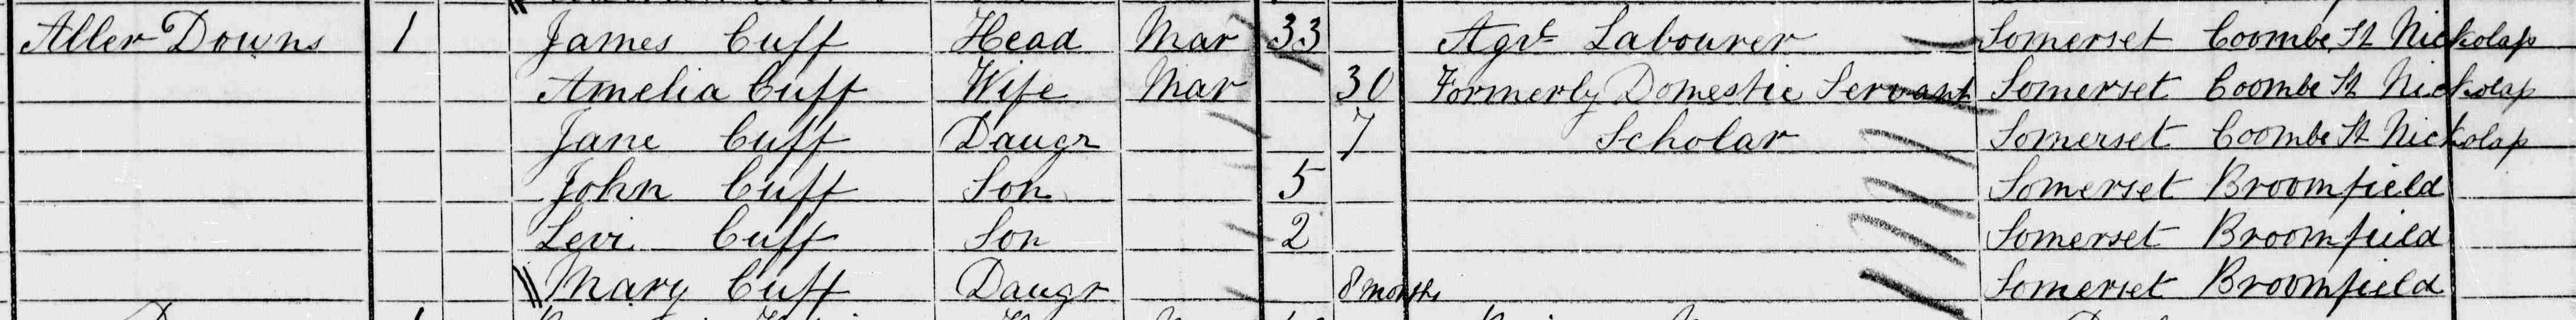 James Cuff & Family in the Devon 1871 Census